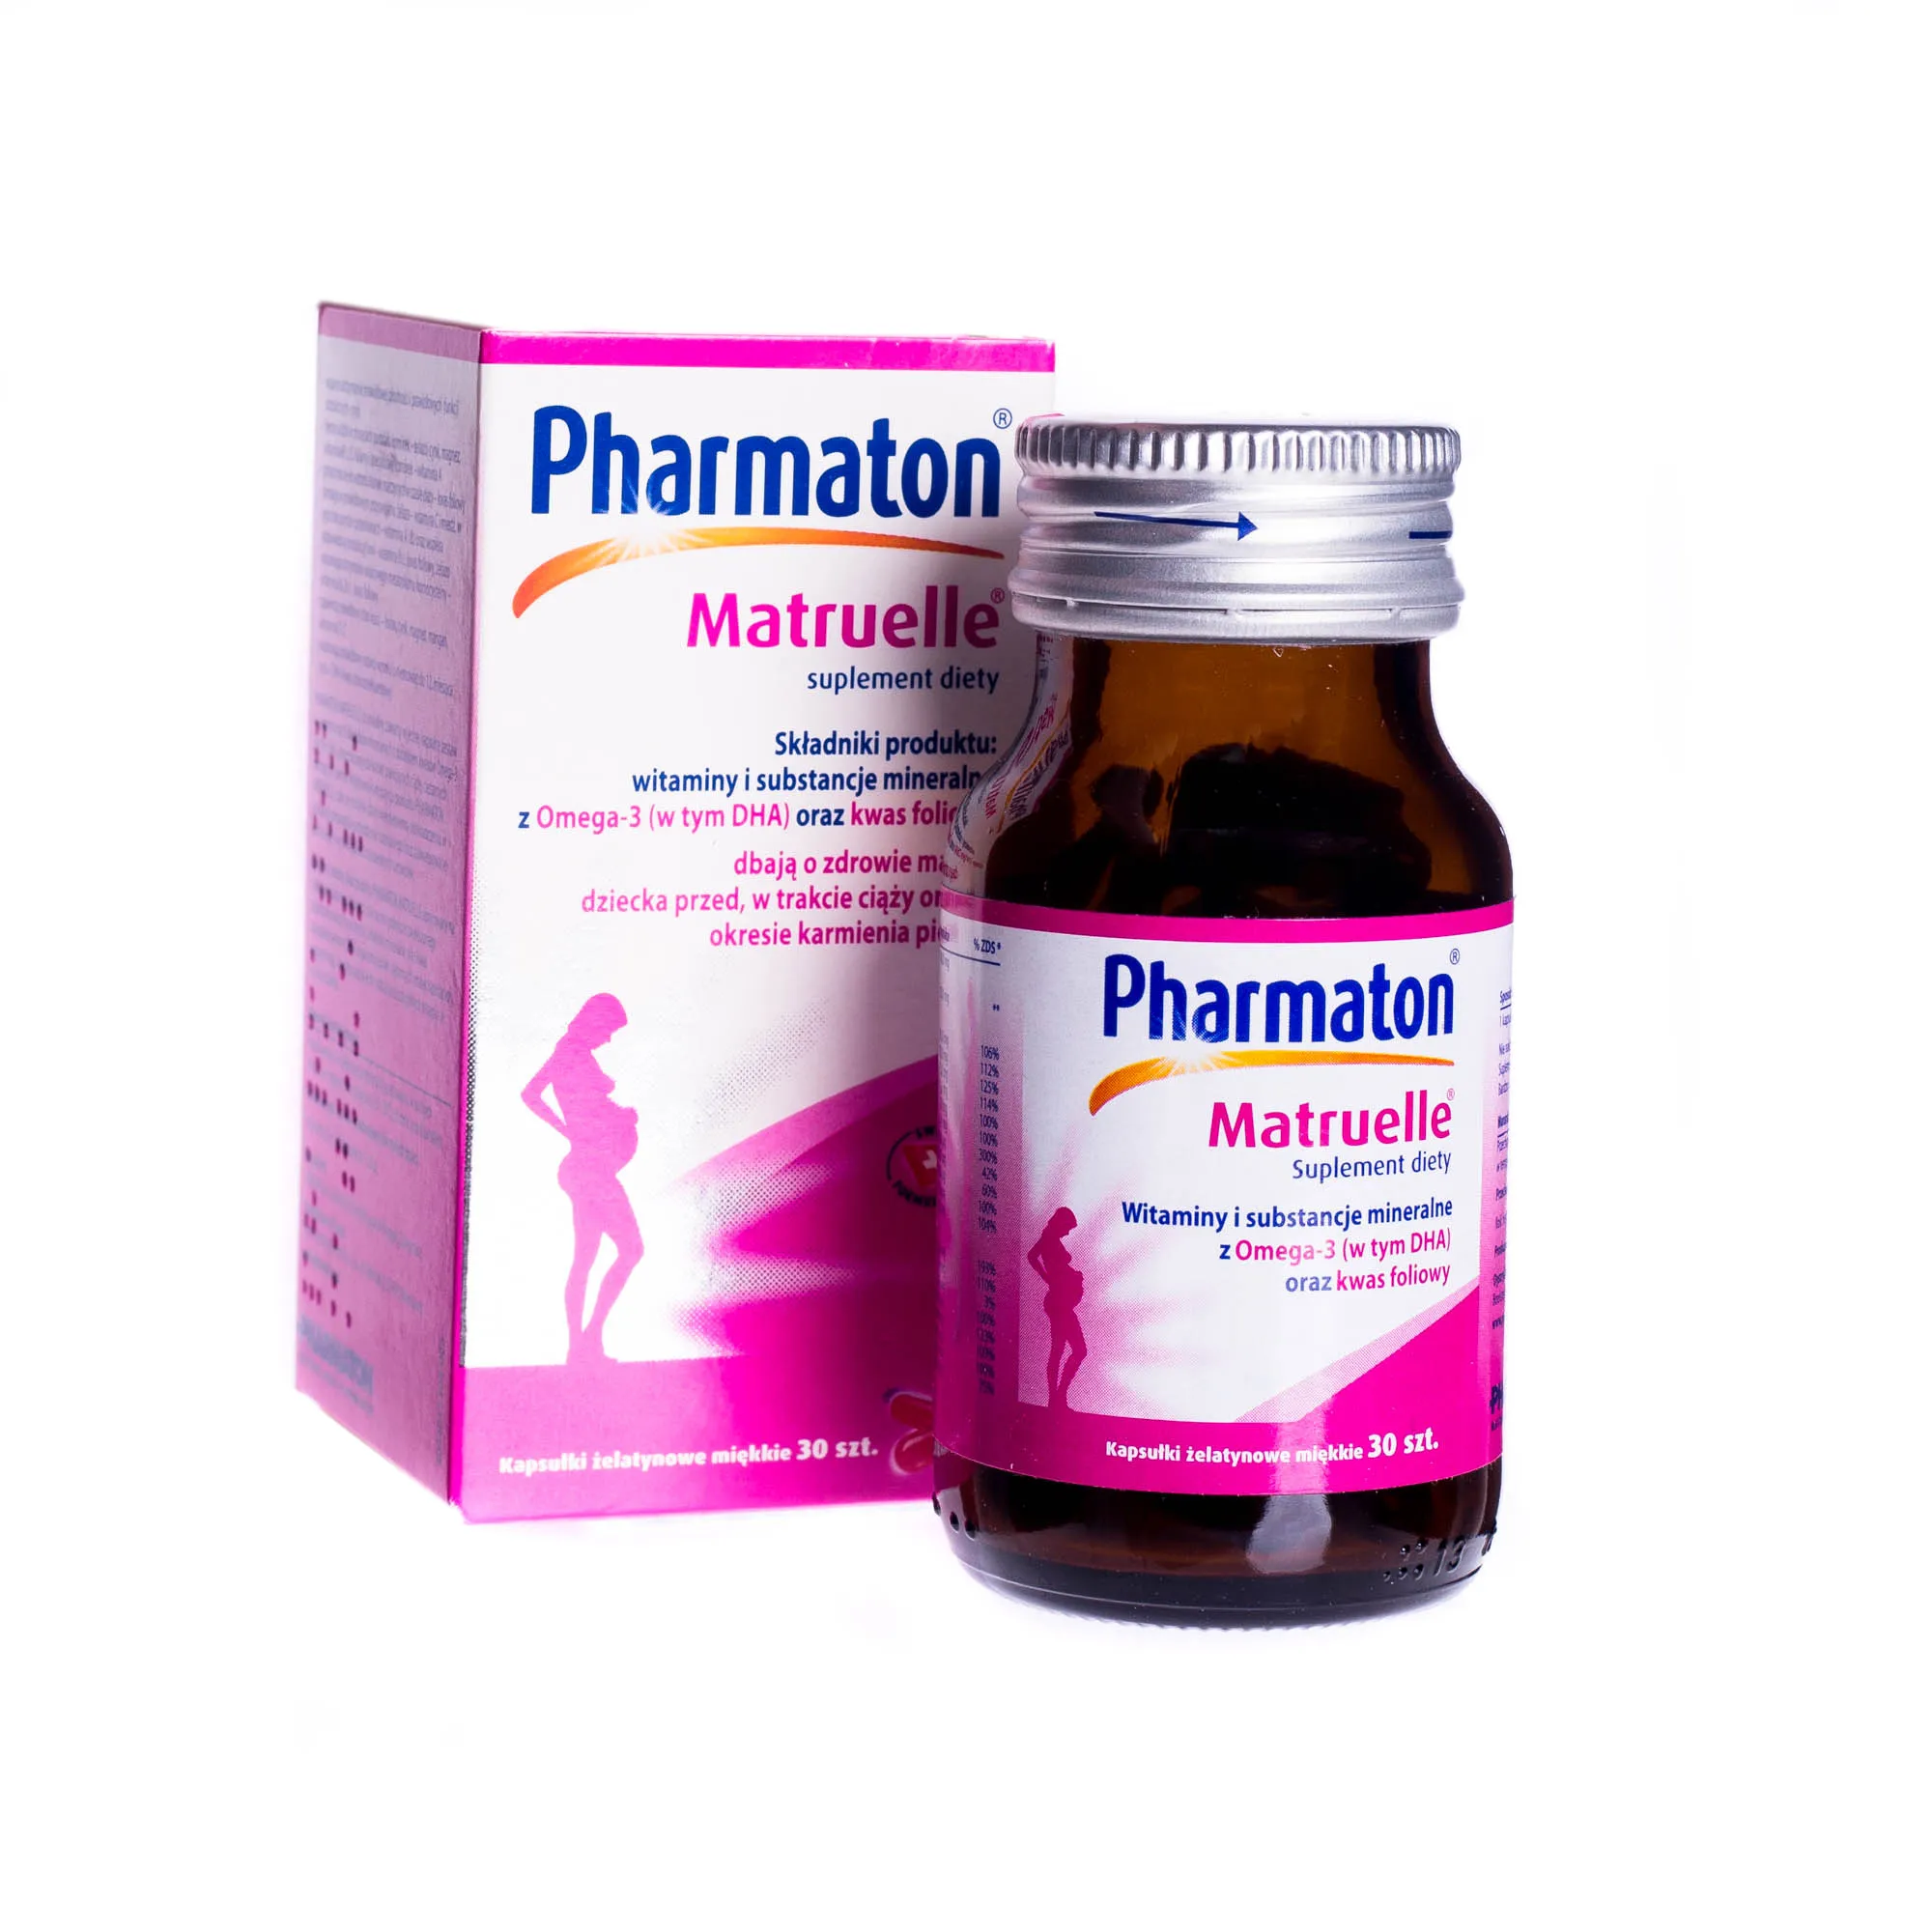 Pharmaton Matruelle - suplement diety dbający o zdrowie matki i dziecka przed, w trakcie ciąży i okresie karmienia piersię, 30 szt. 